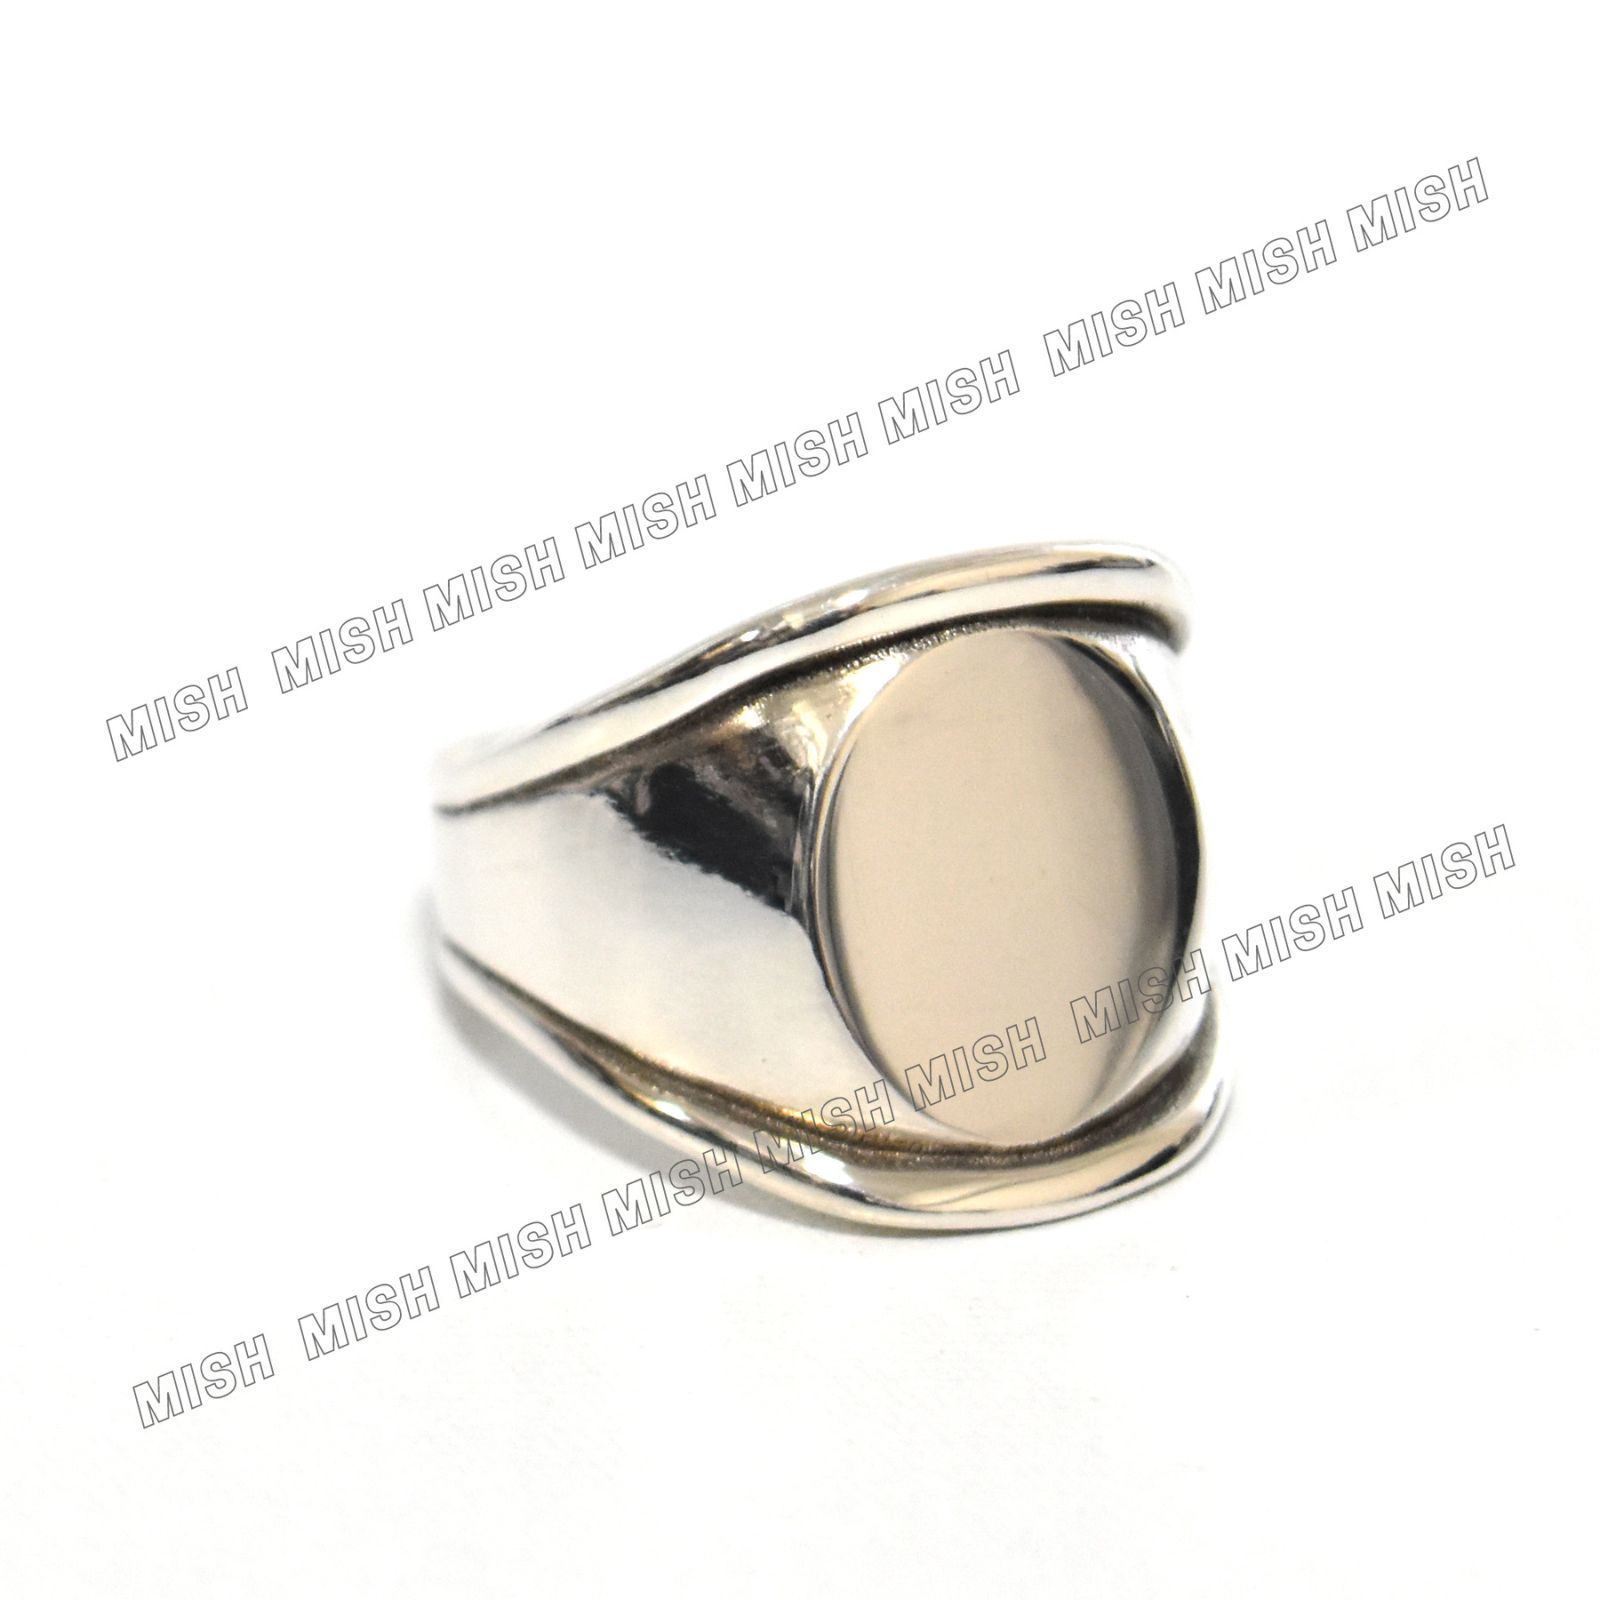 BOTTEGA VENETA シグネットリング 指輪 メンズ 617958 - MISH メルカリ